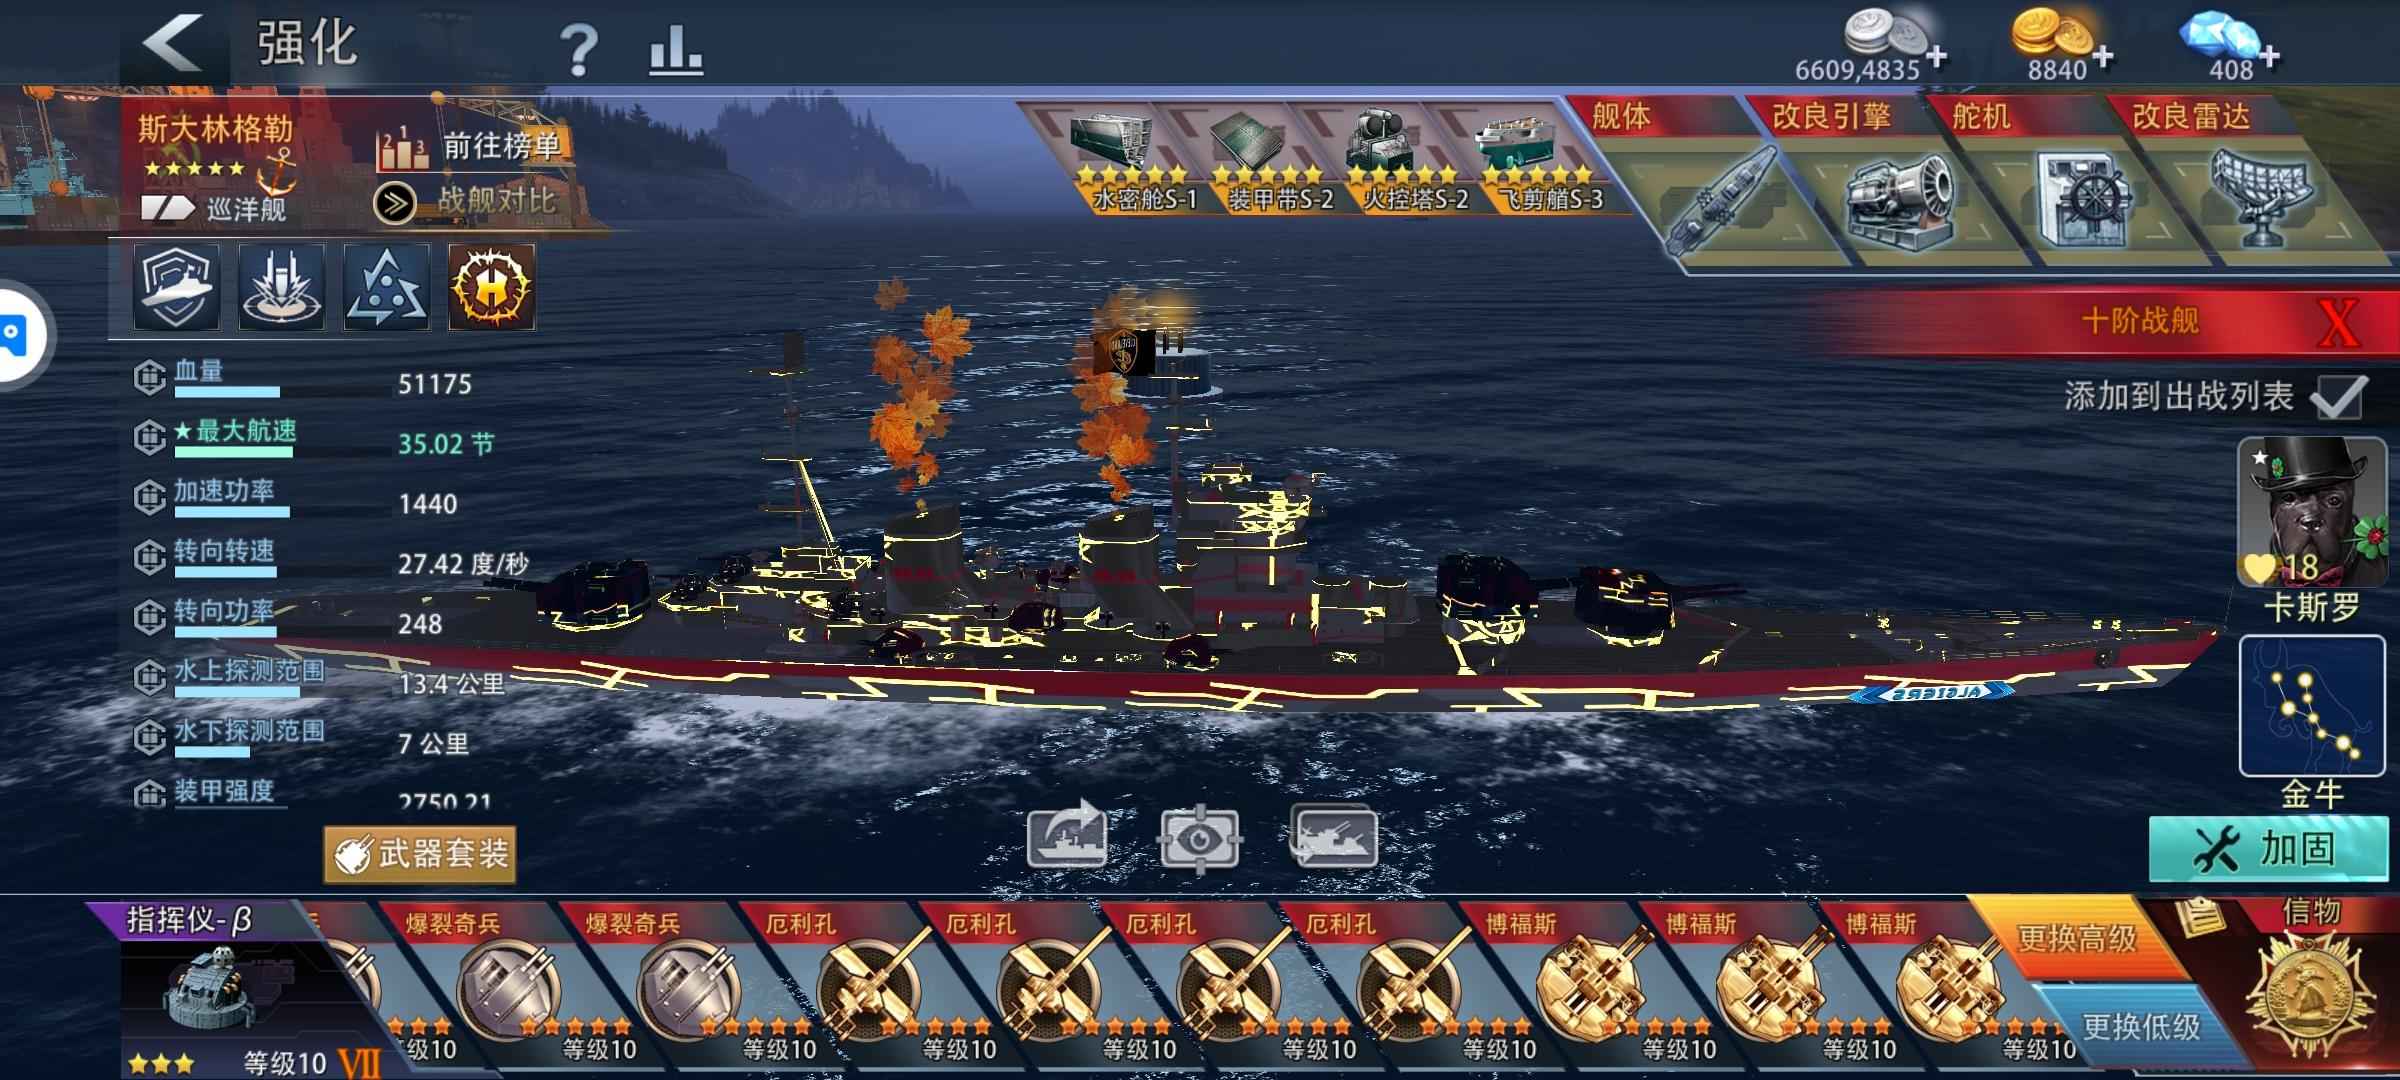 巅峰战舰【5星级13】16万分顶级巡洋，高配。中将号